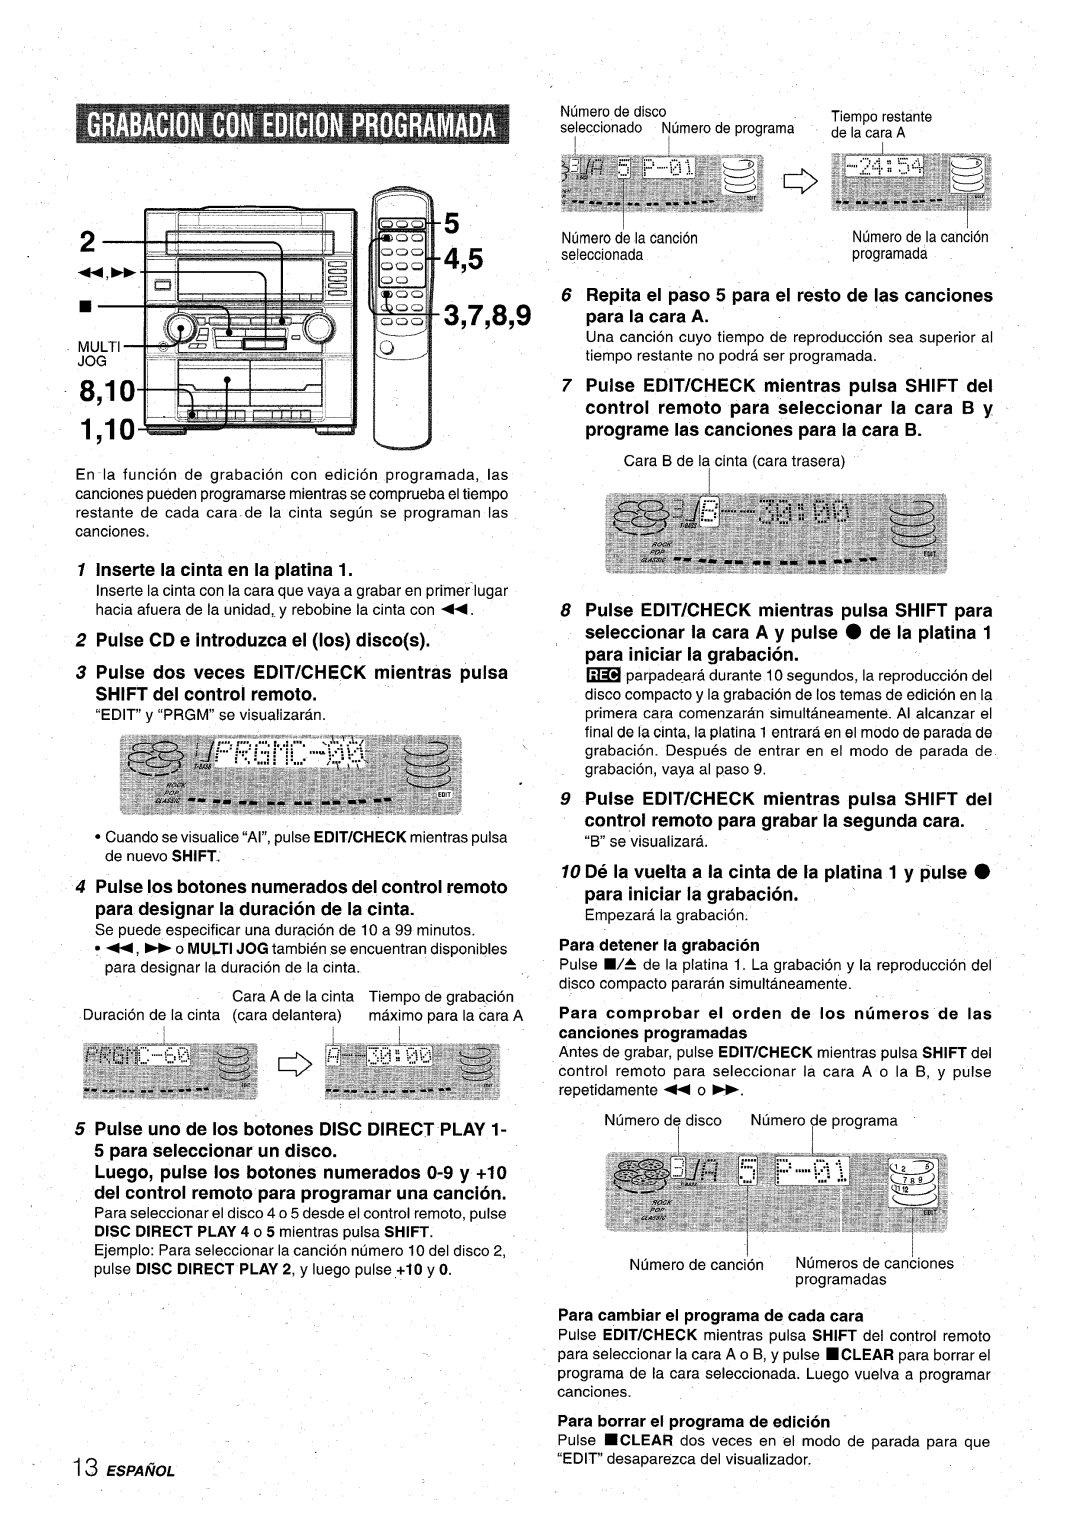 Aiwa XR-M75 manual Repita el paso 5 para el resto de Ias canciones para la cara A, Inserte la cinta en la platina 